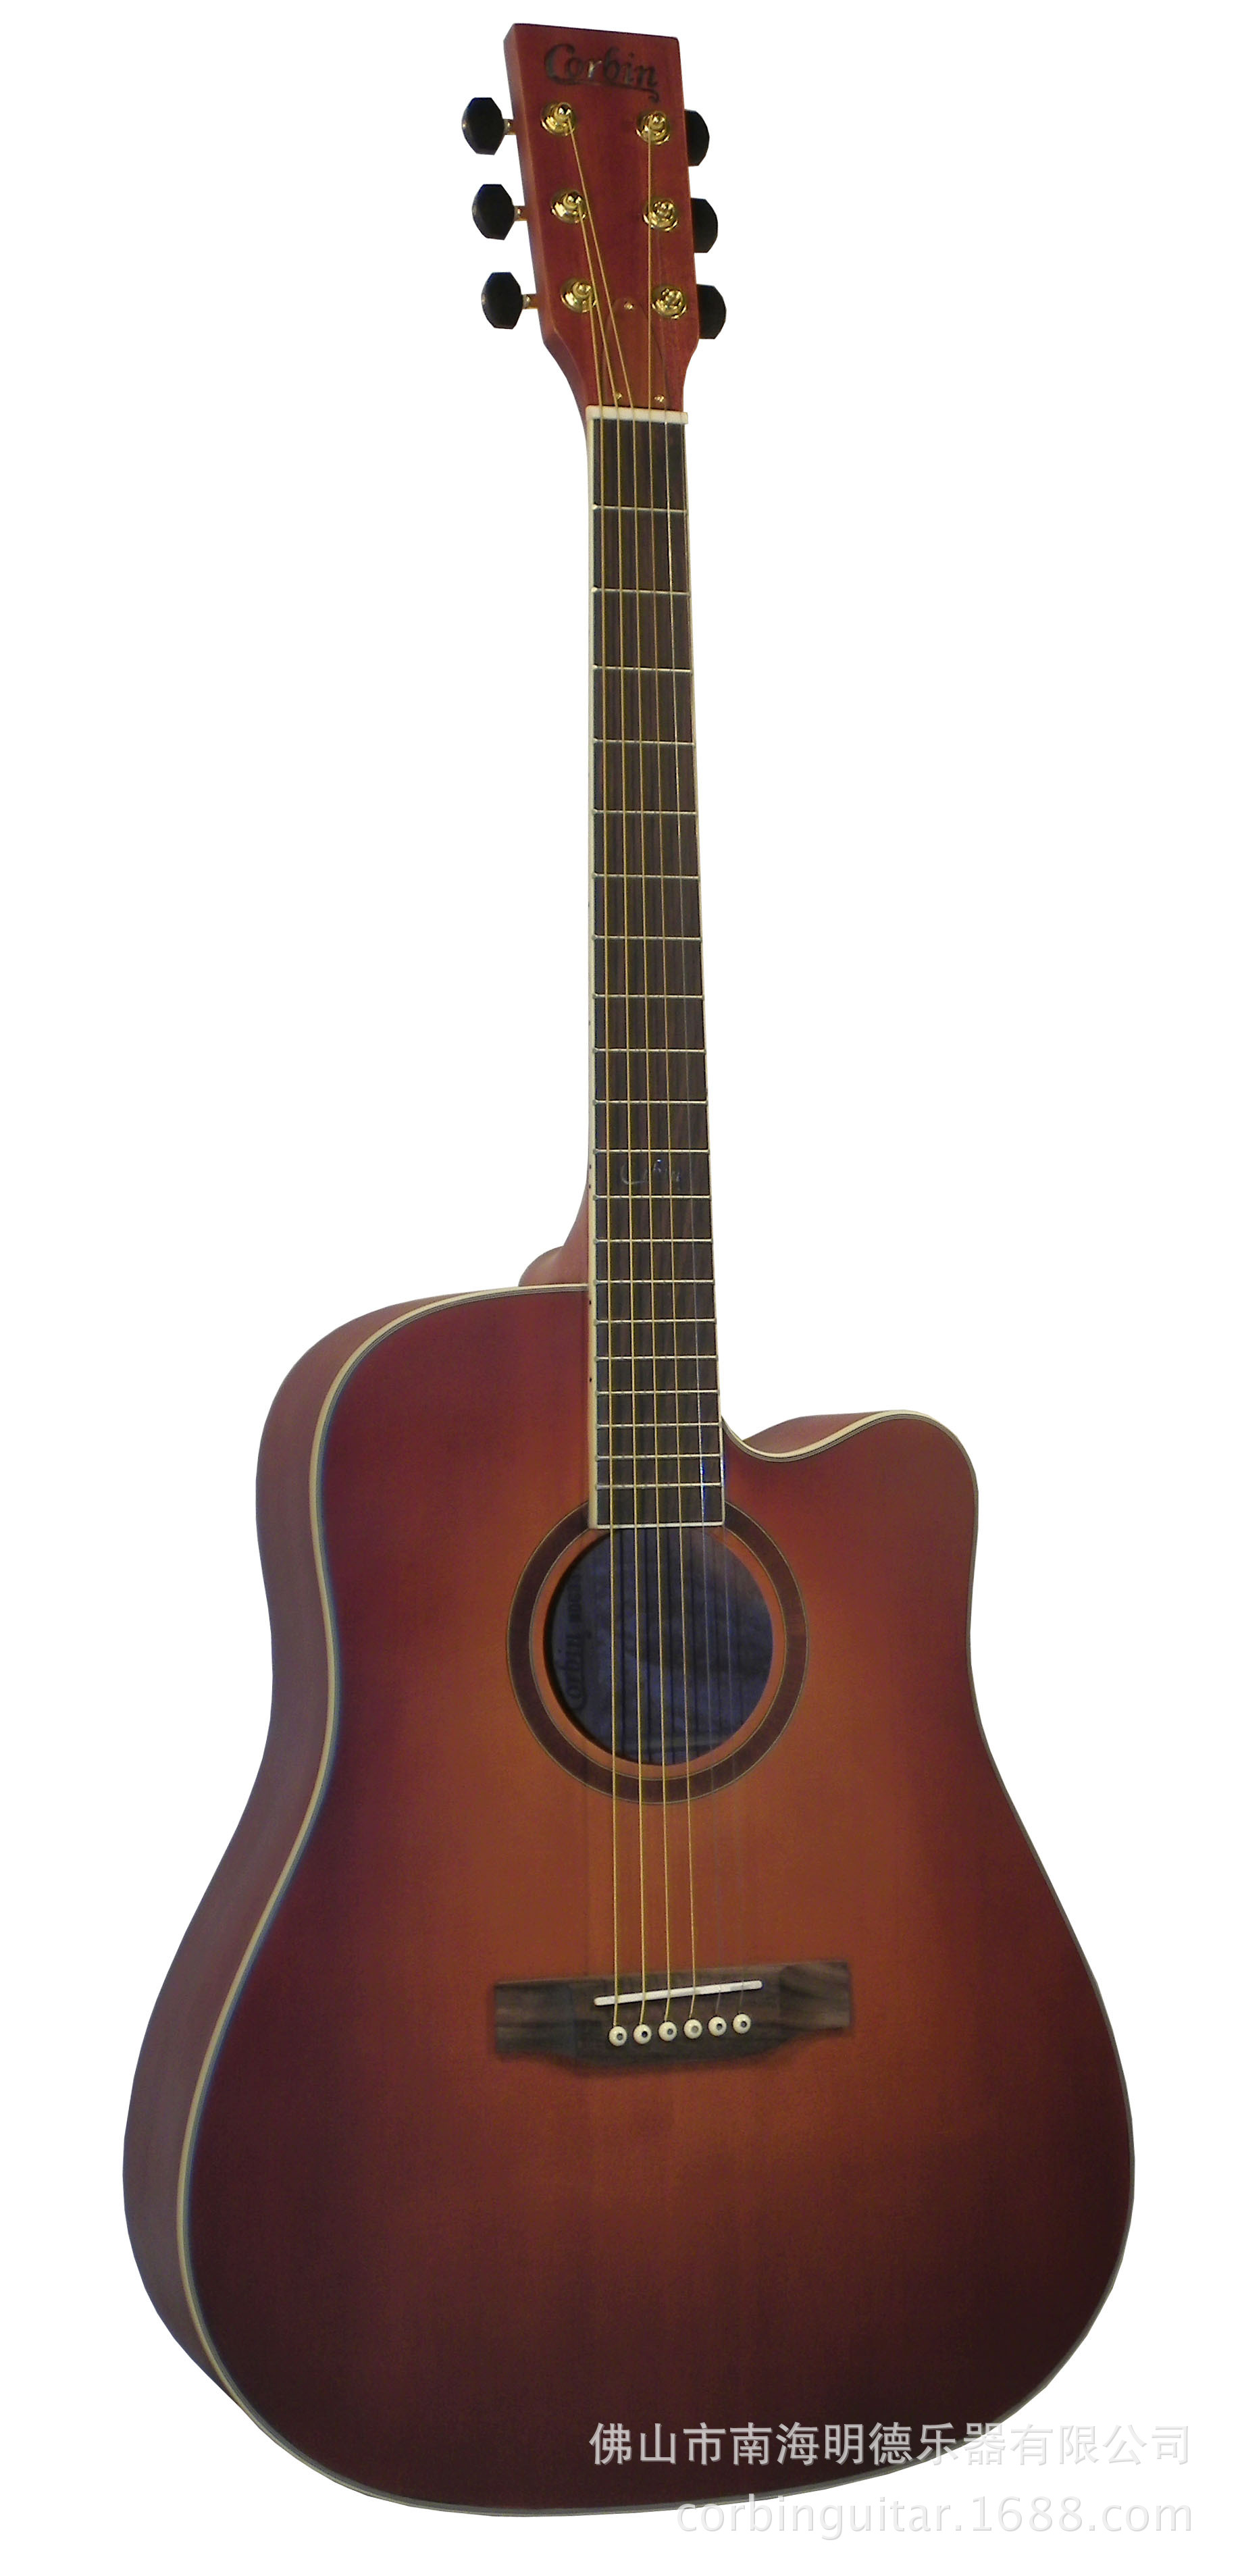 弦线-大量求购21寸小四弦吉他弦线- ukulele弦线